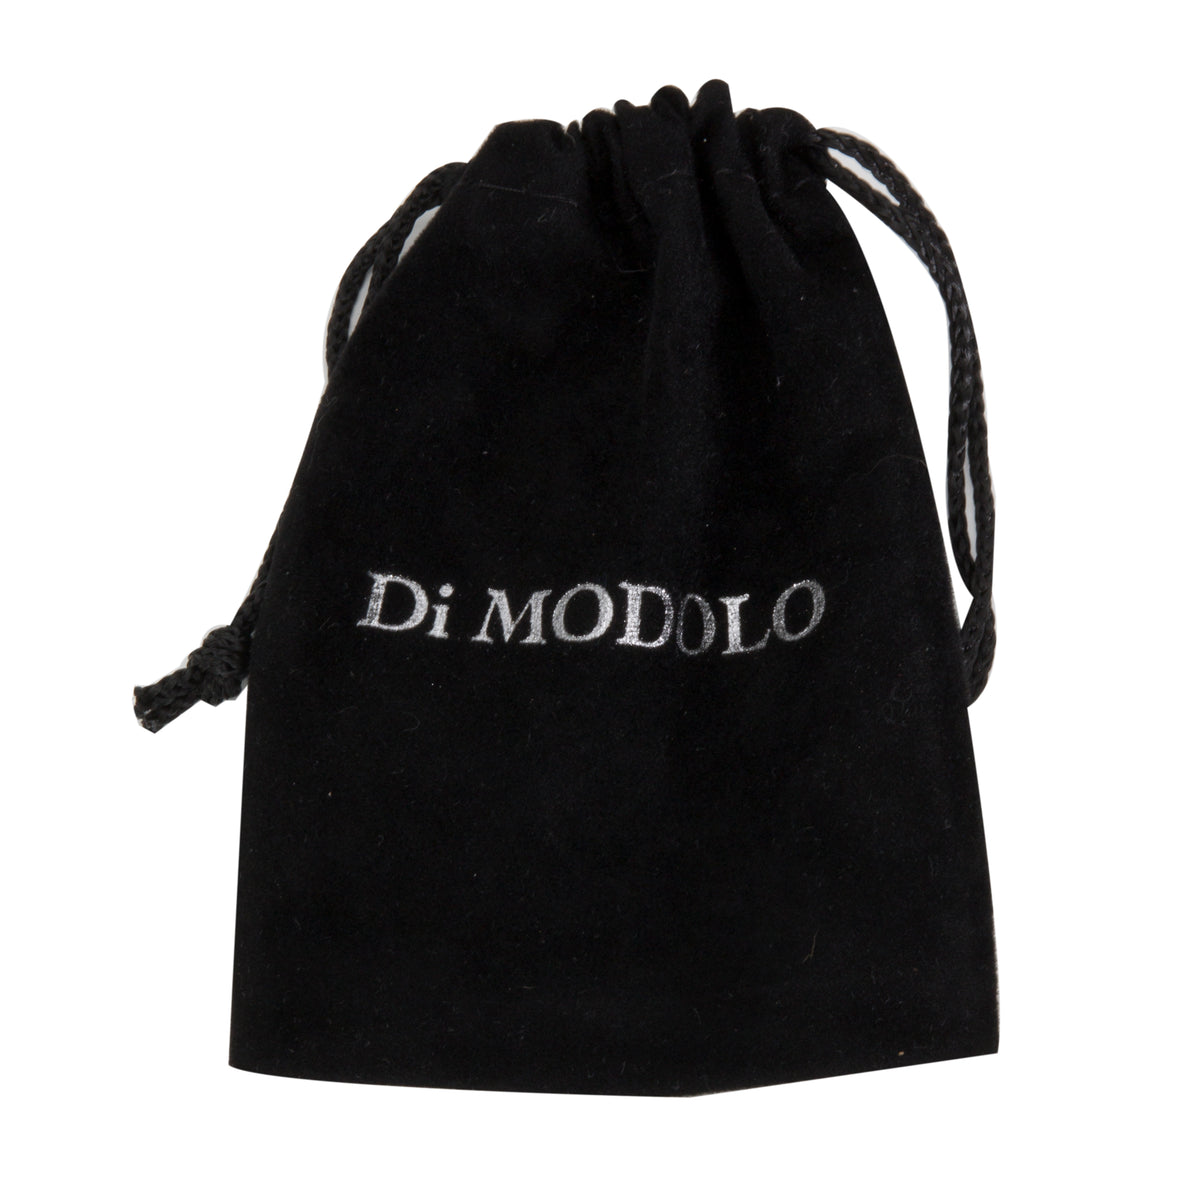 BRAND NEW Di Modolo Pendant in Plated Black Rhodium